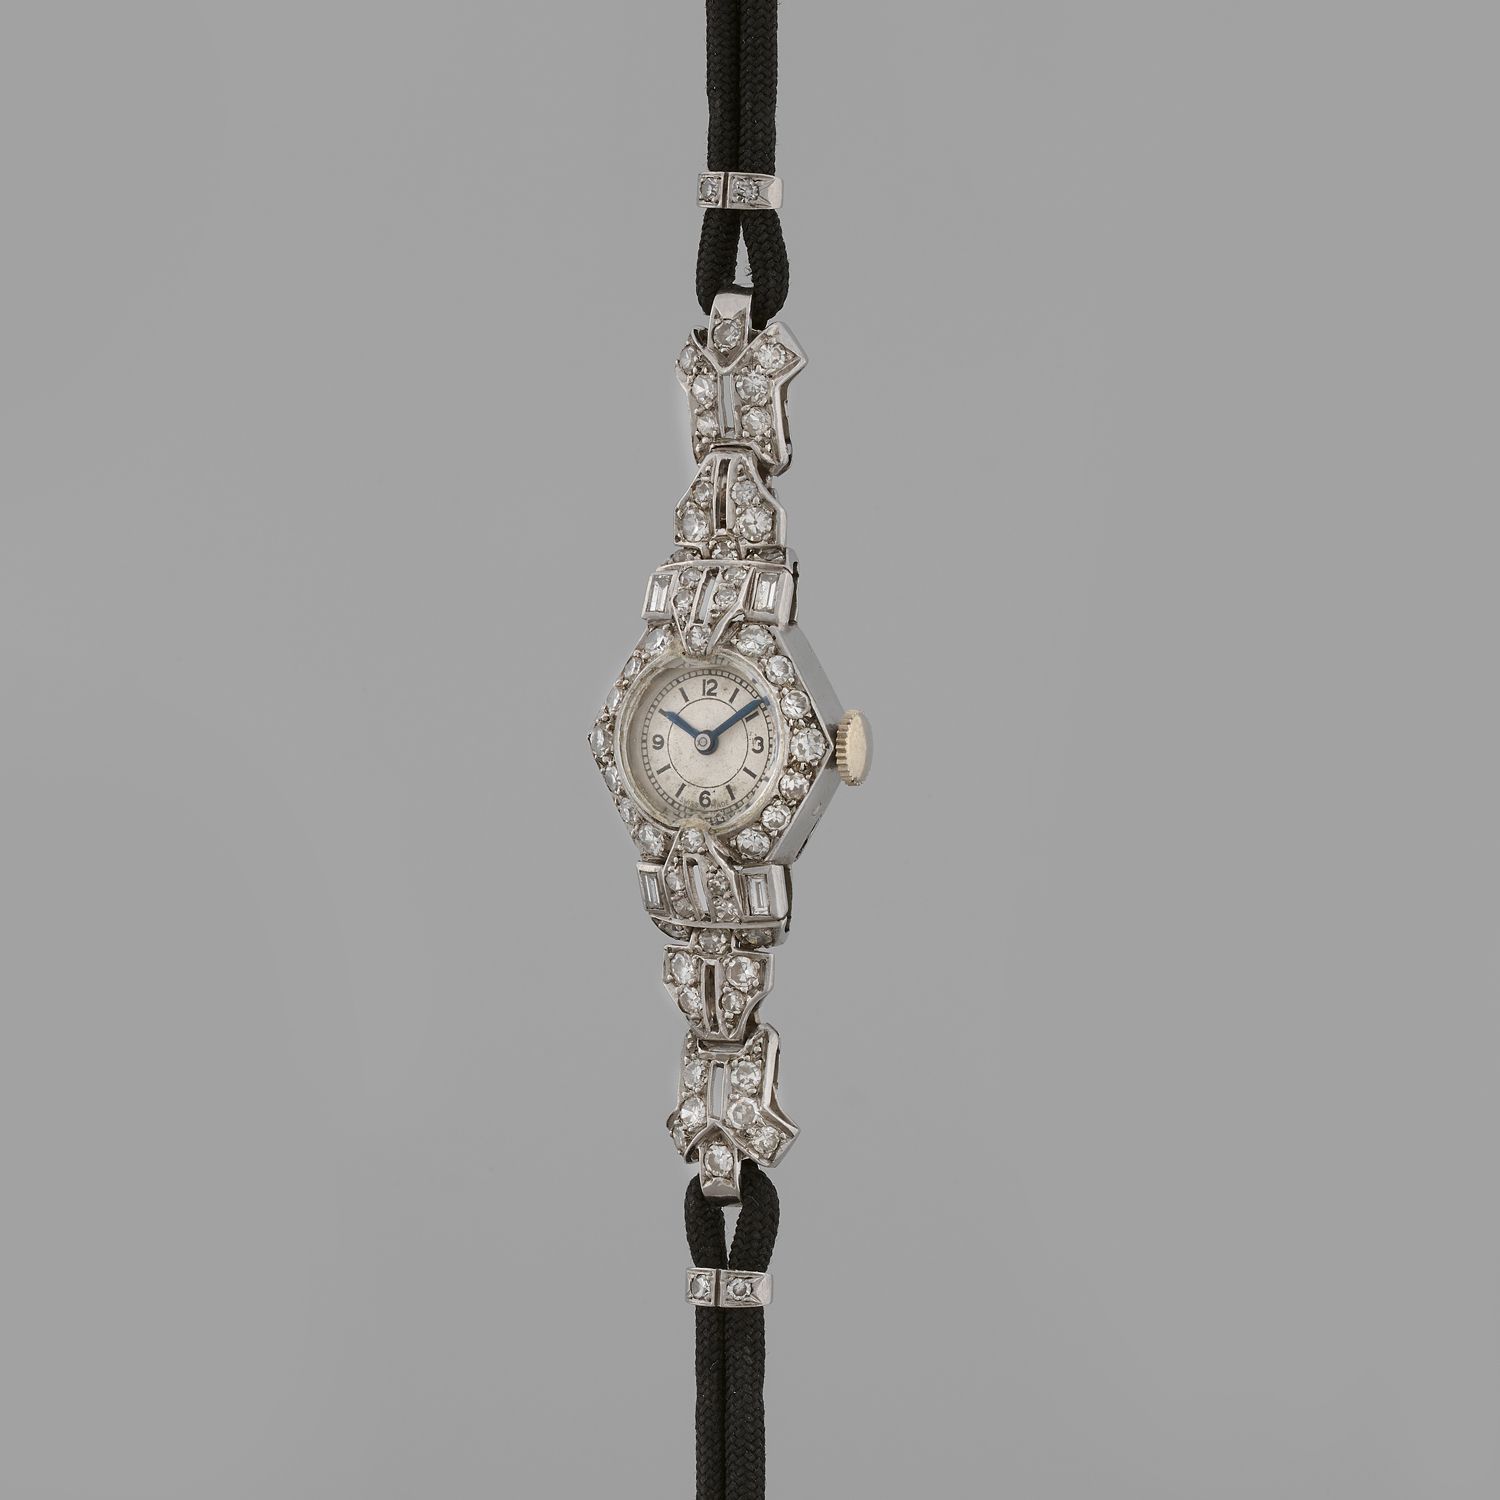 Null BIJOUX-UHR
Uhr für einen Cocktail.
Um: 1920.
Elegante Armbanduhr aus Platin&hellip;